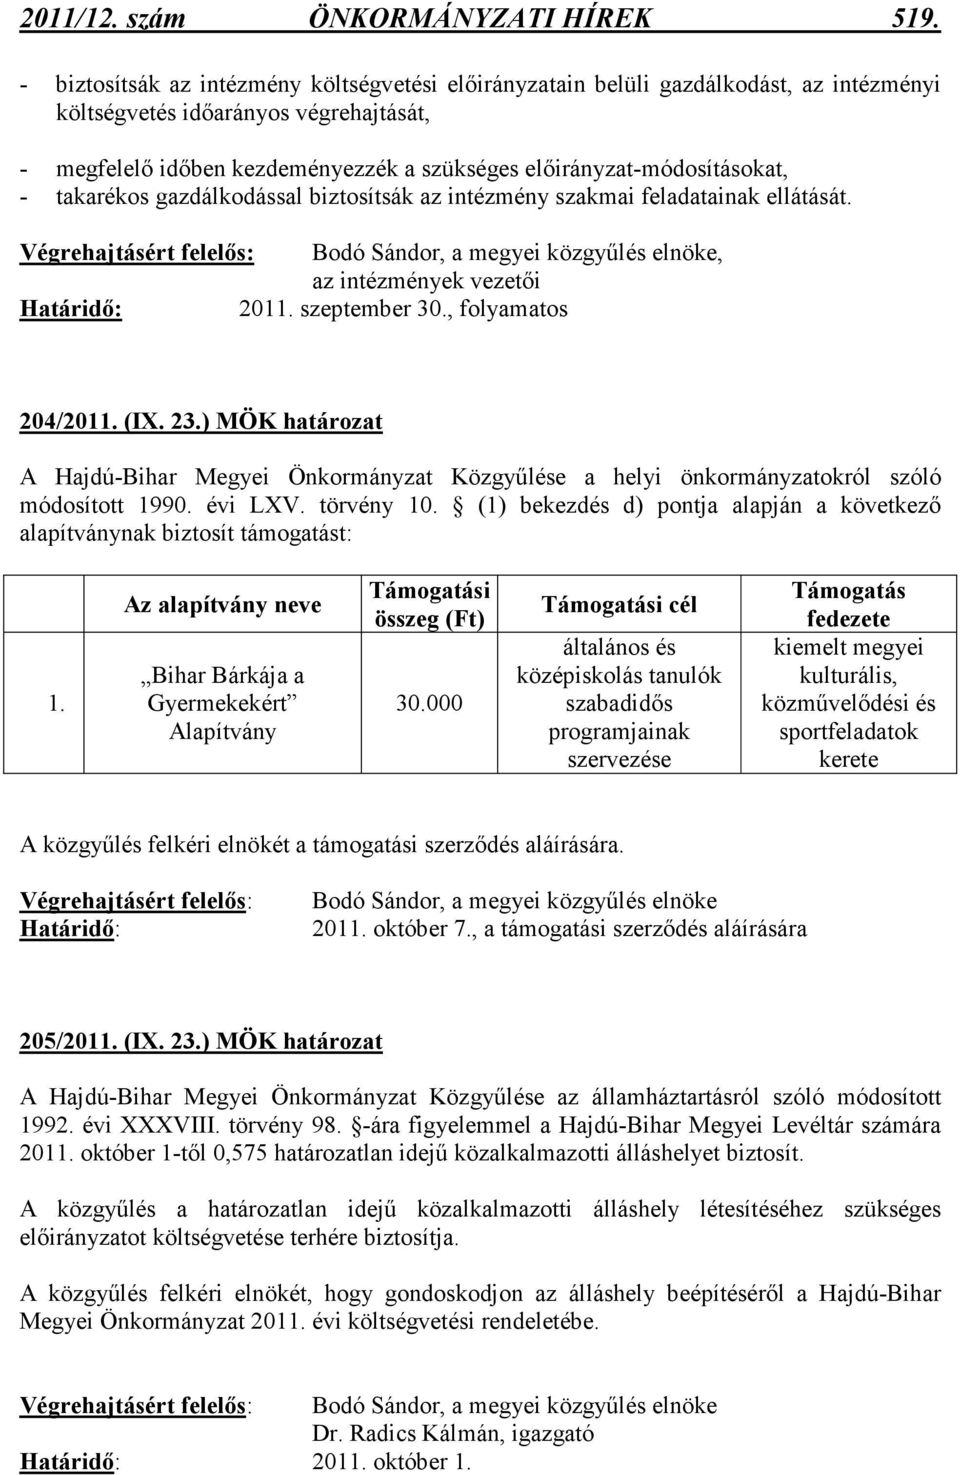 elıirányzat-módosításokat, - takarékos gazdálkodással biztosítsák az intézmény szakmai feladatainak ellátását., az intézmények vezetıi Határidı: 2011. szeptember 30., folyamatos 204/2011. (IX. 23.